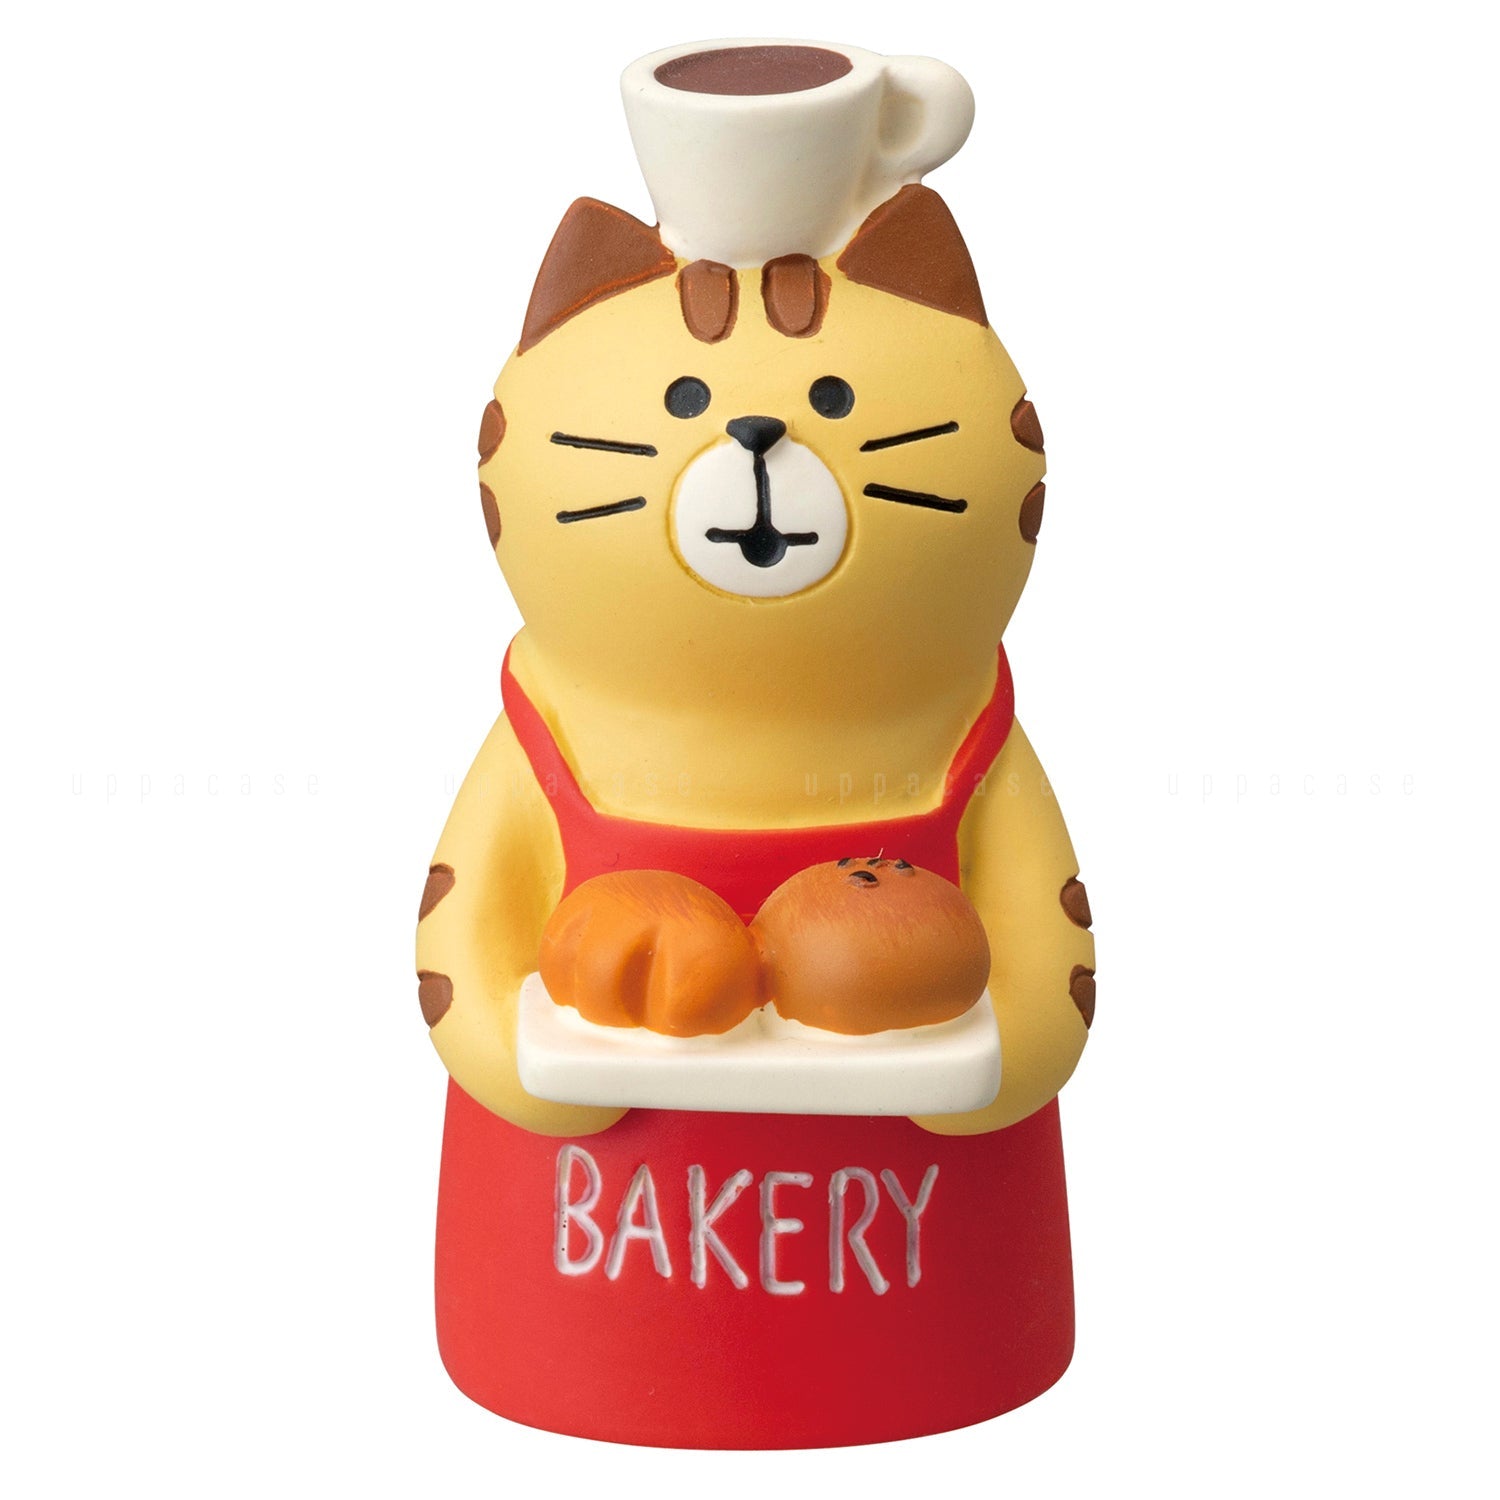 Baker Cat Figurine - Mu Shop